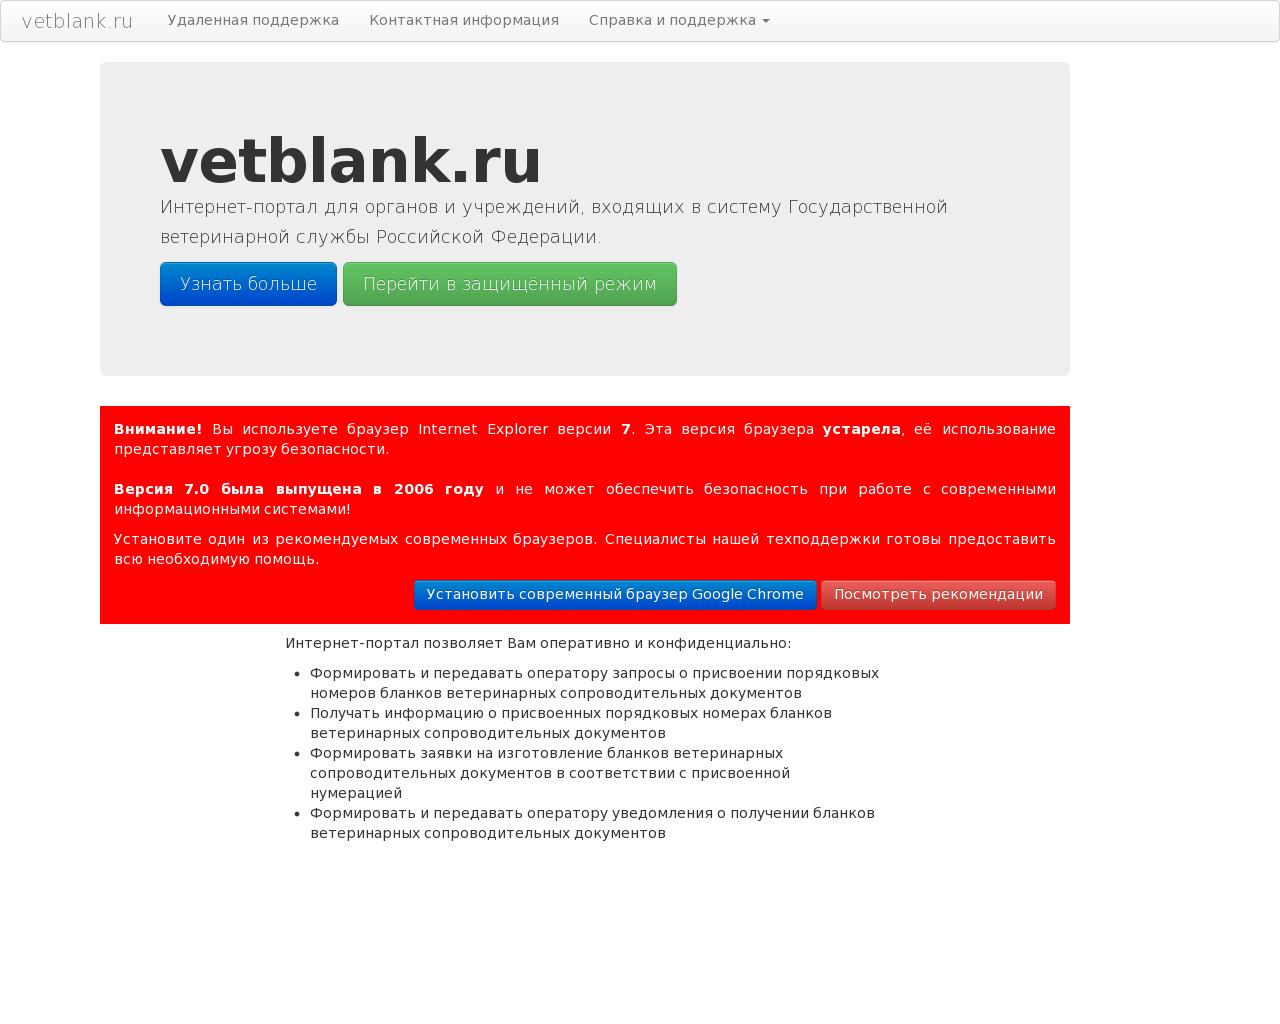 Изображение сайта vetblank.ru в разрешении 1280x1024